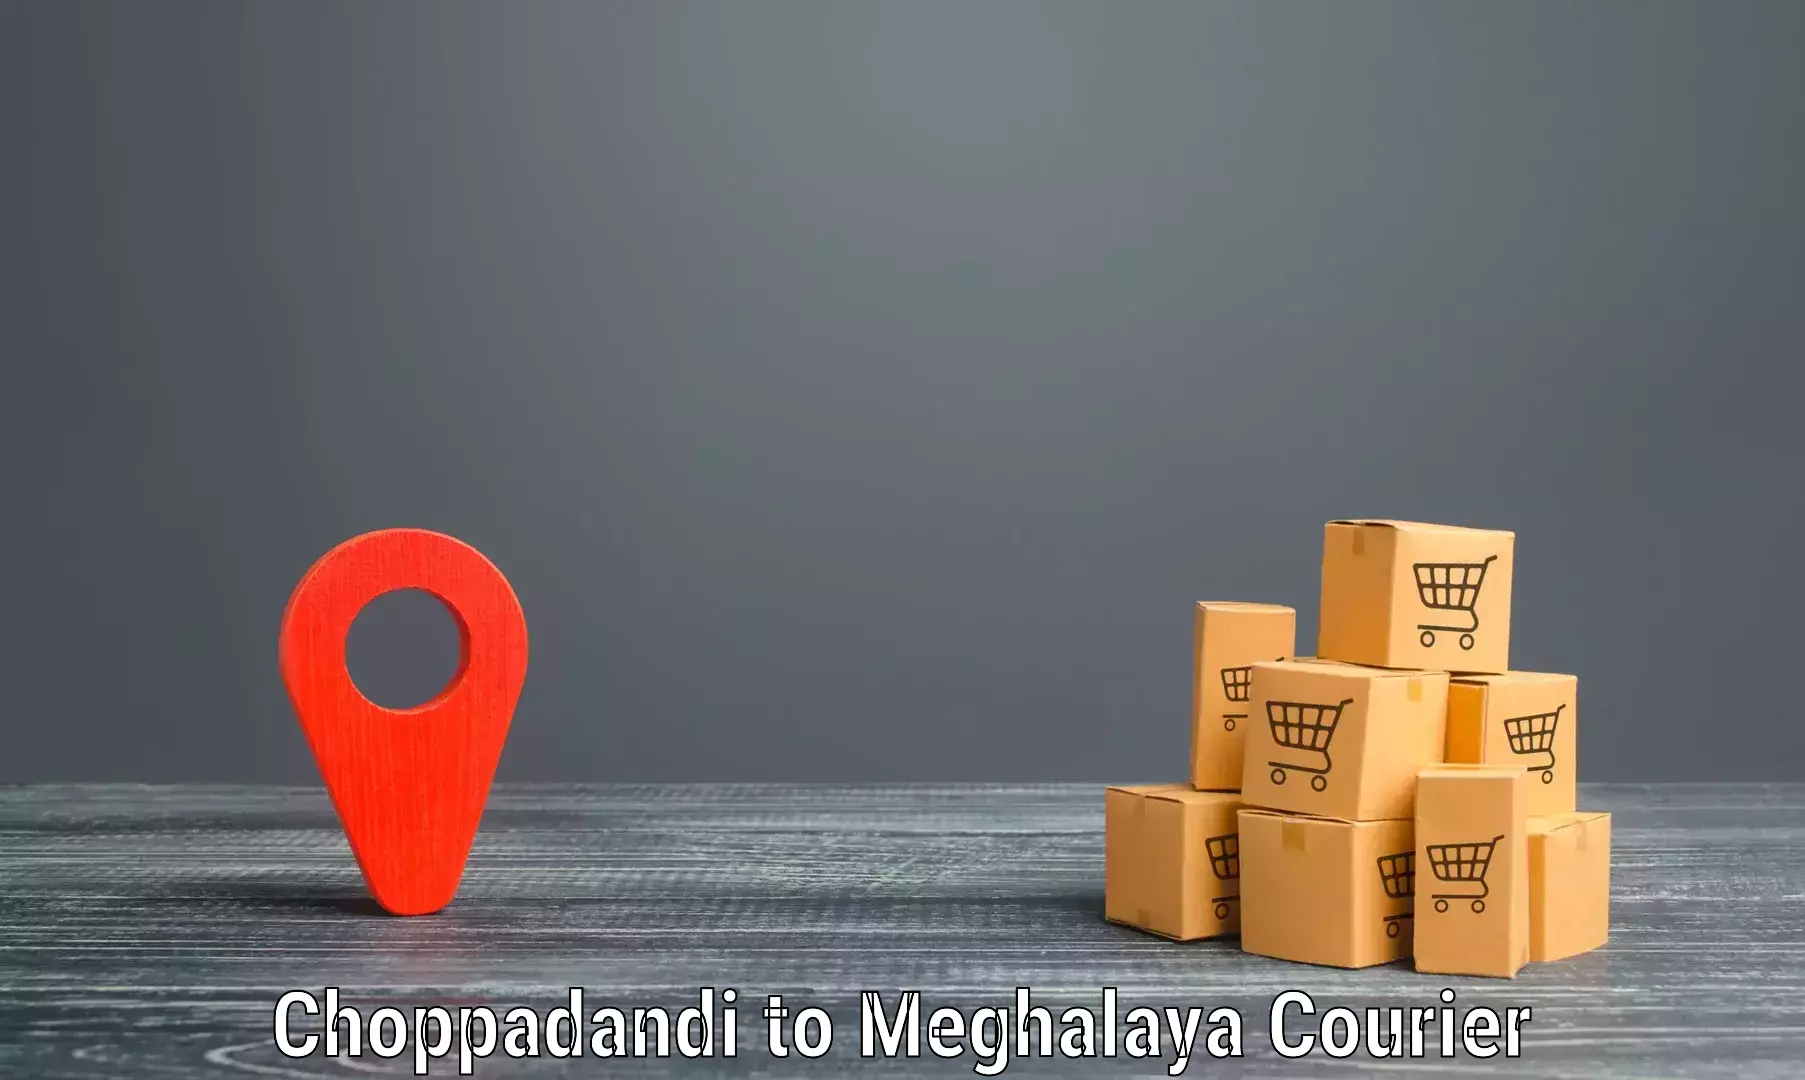 High-performance logistics Choppadandi to Meghalaya